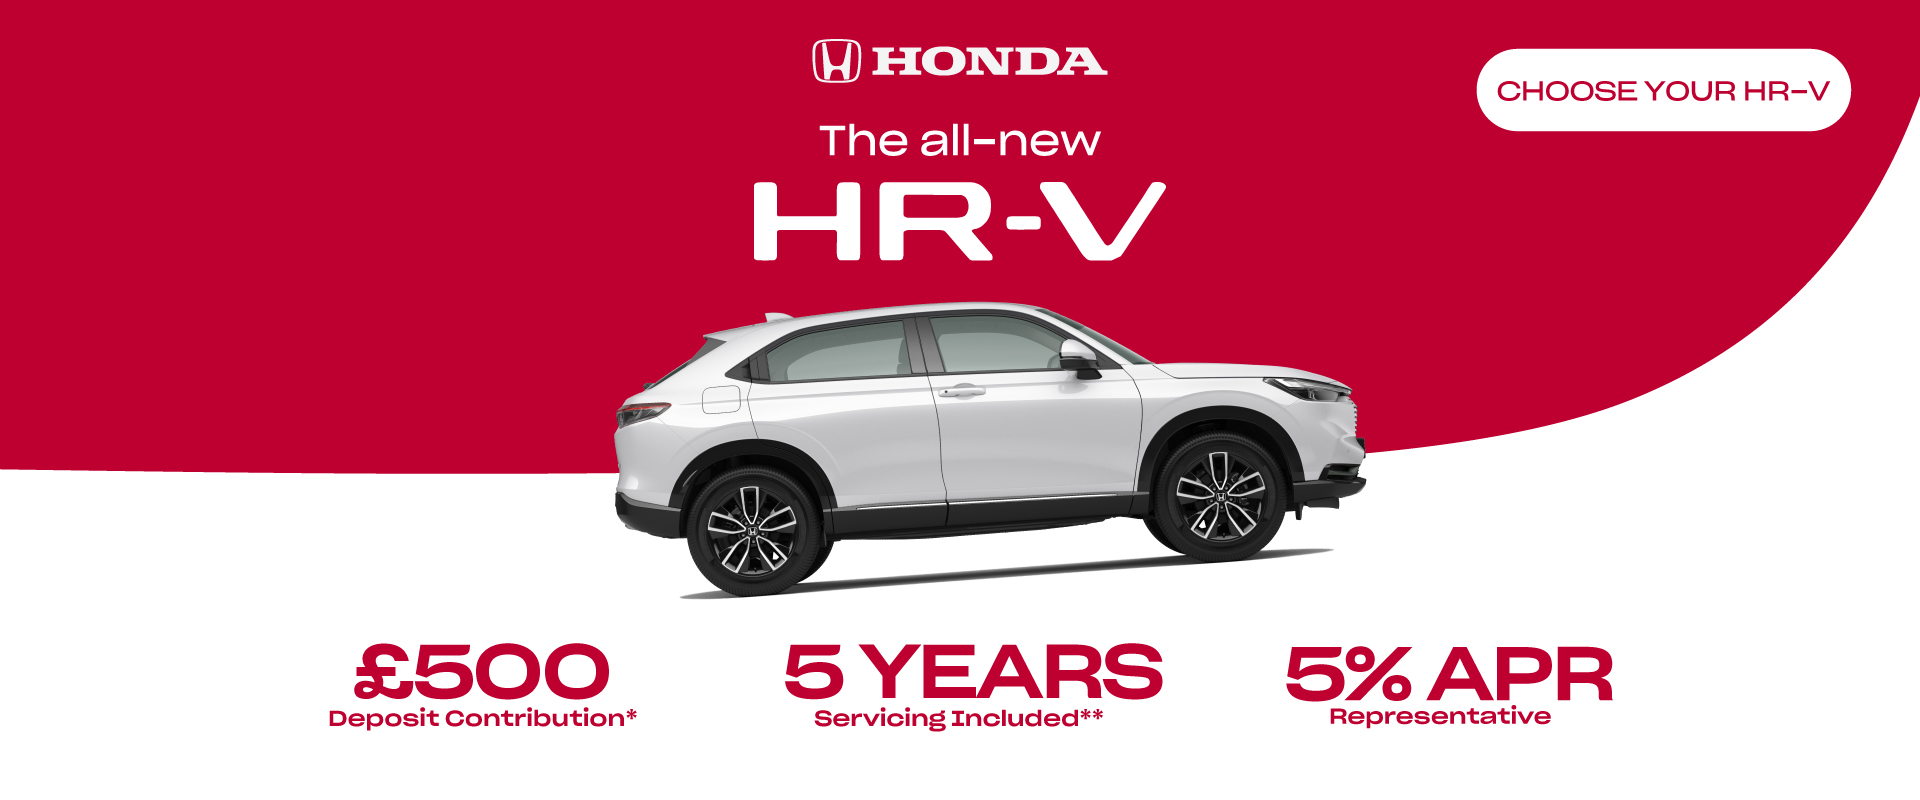 HR-V Hybrid offer